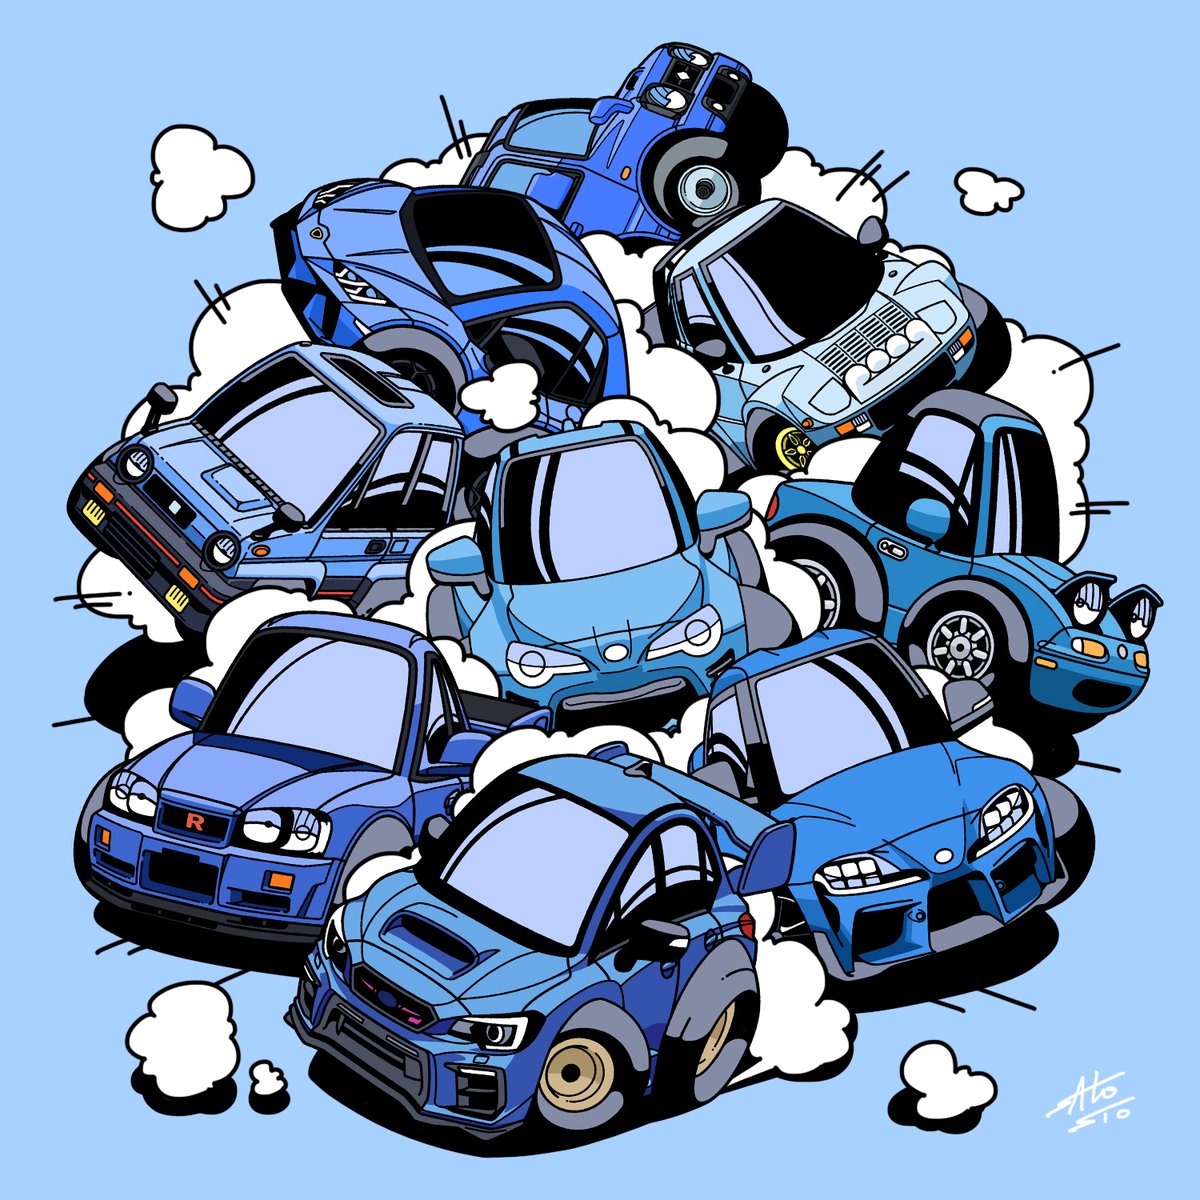 signature chibi no humans blue background robot motor vehicle mecha  illustration images